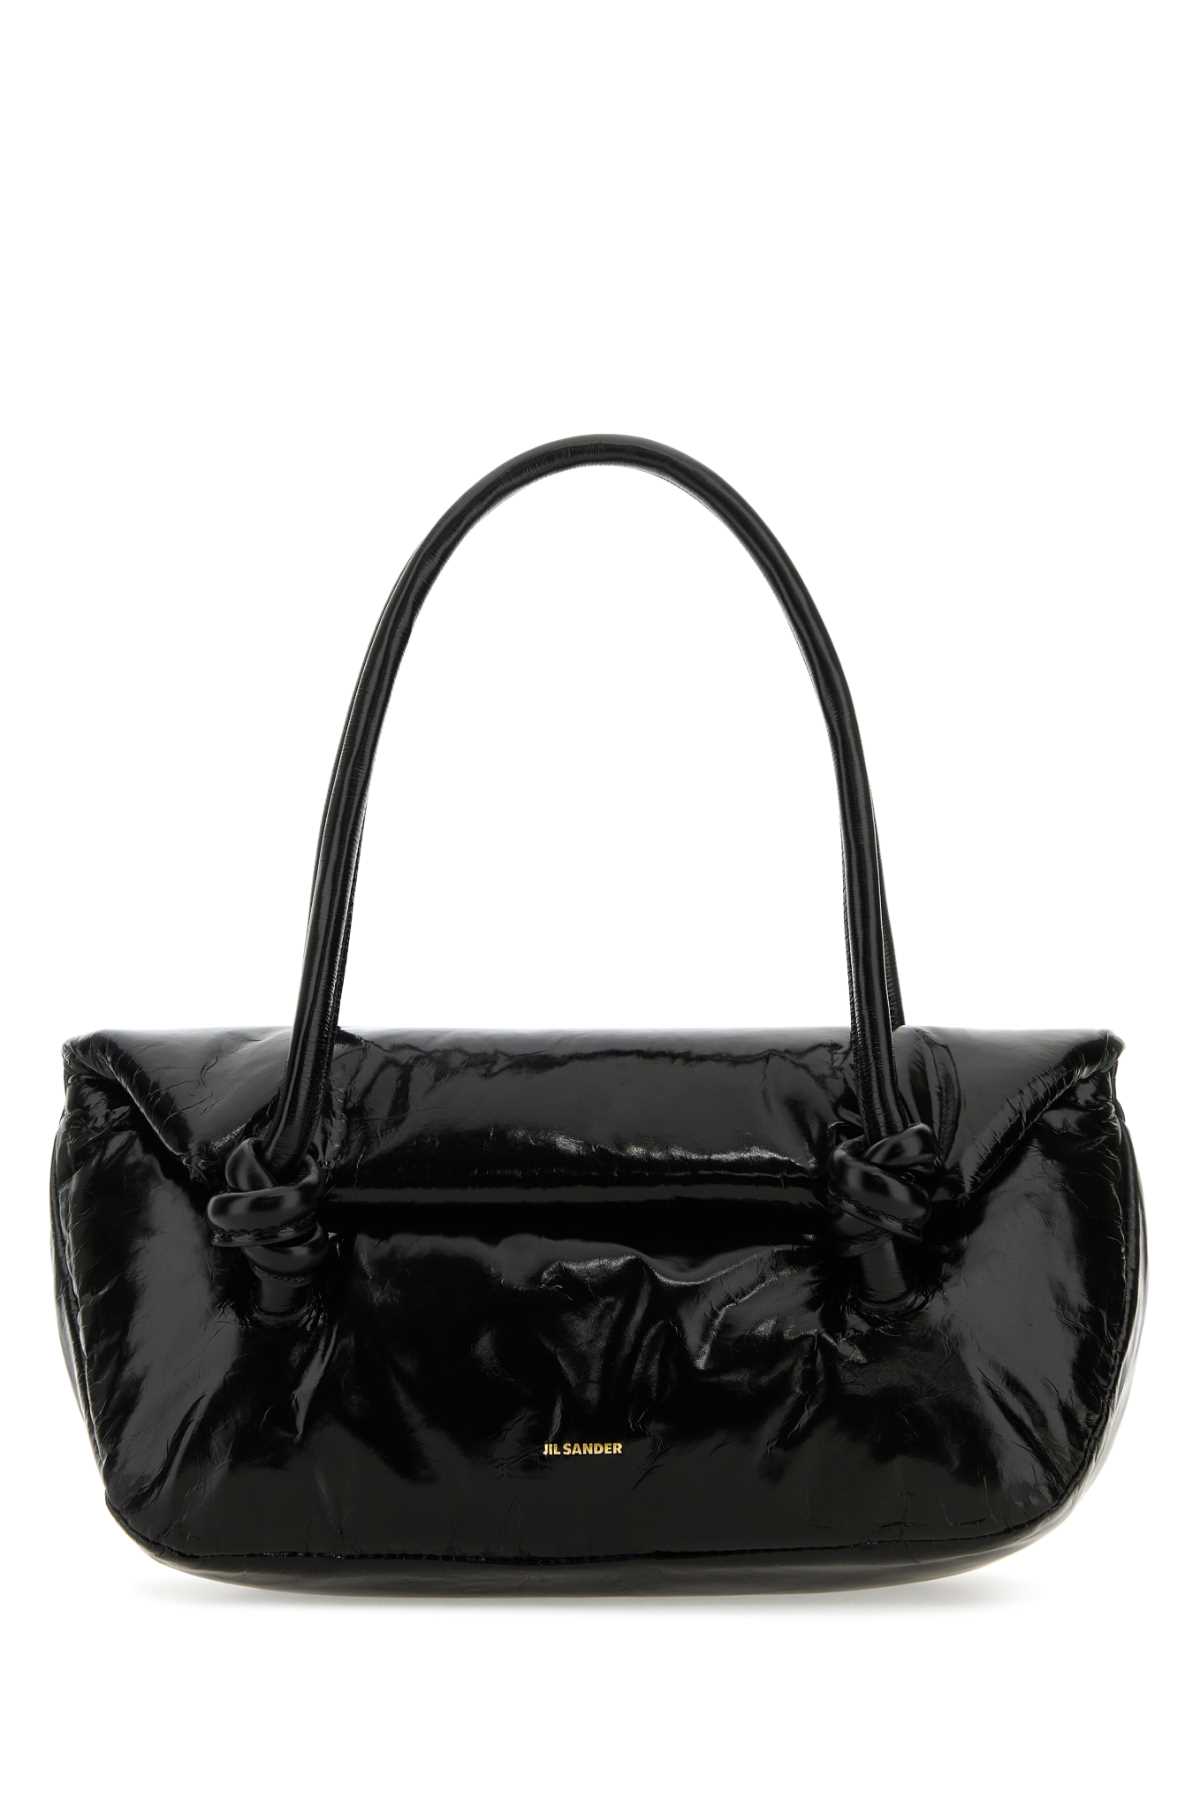 Black Leather Small Knot Handle Handbag